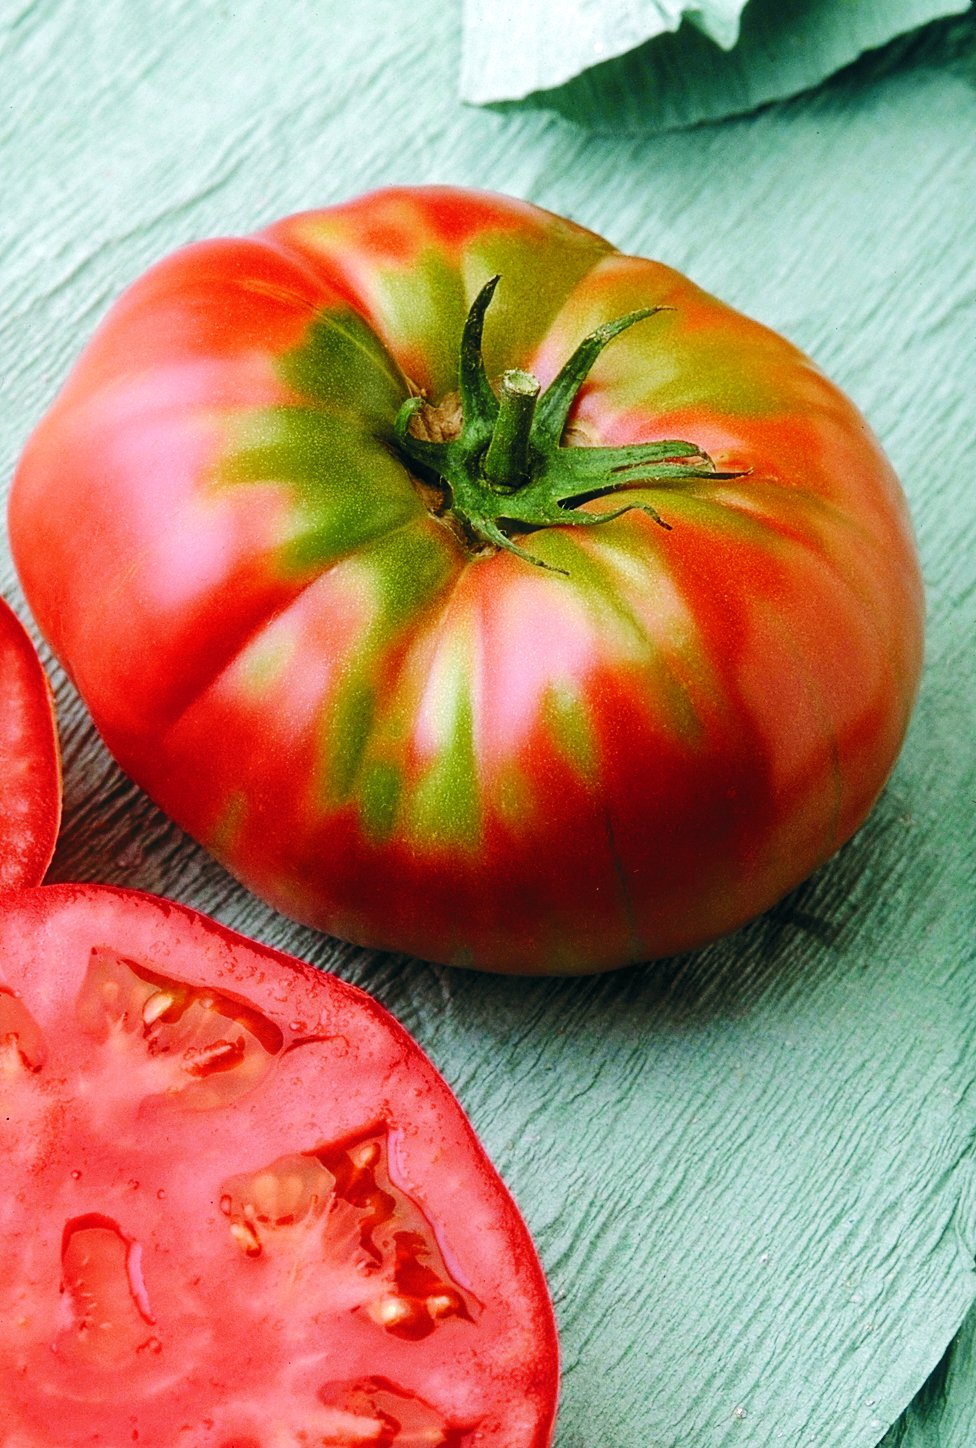 Tomato - Slicer / Beefsteak — Rohrer Seeds